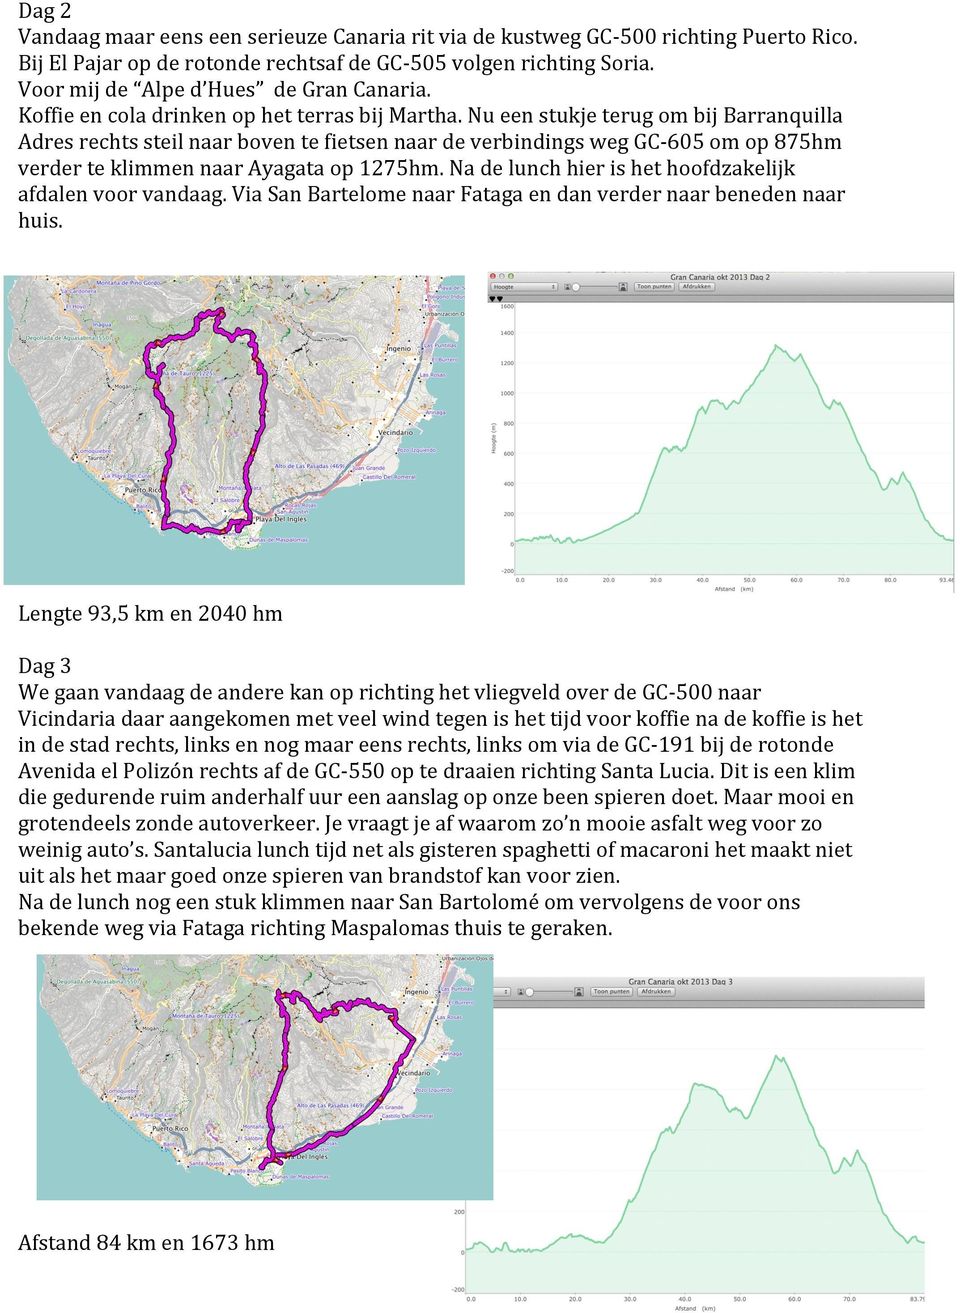 Nu een stukje terug om bij Barranquilla Adres rechts steil naar boven te fietsen naar de verbindings weg GC- 605 om op 875hm verder te klimmen naar Ayagata op 1275hm.